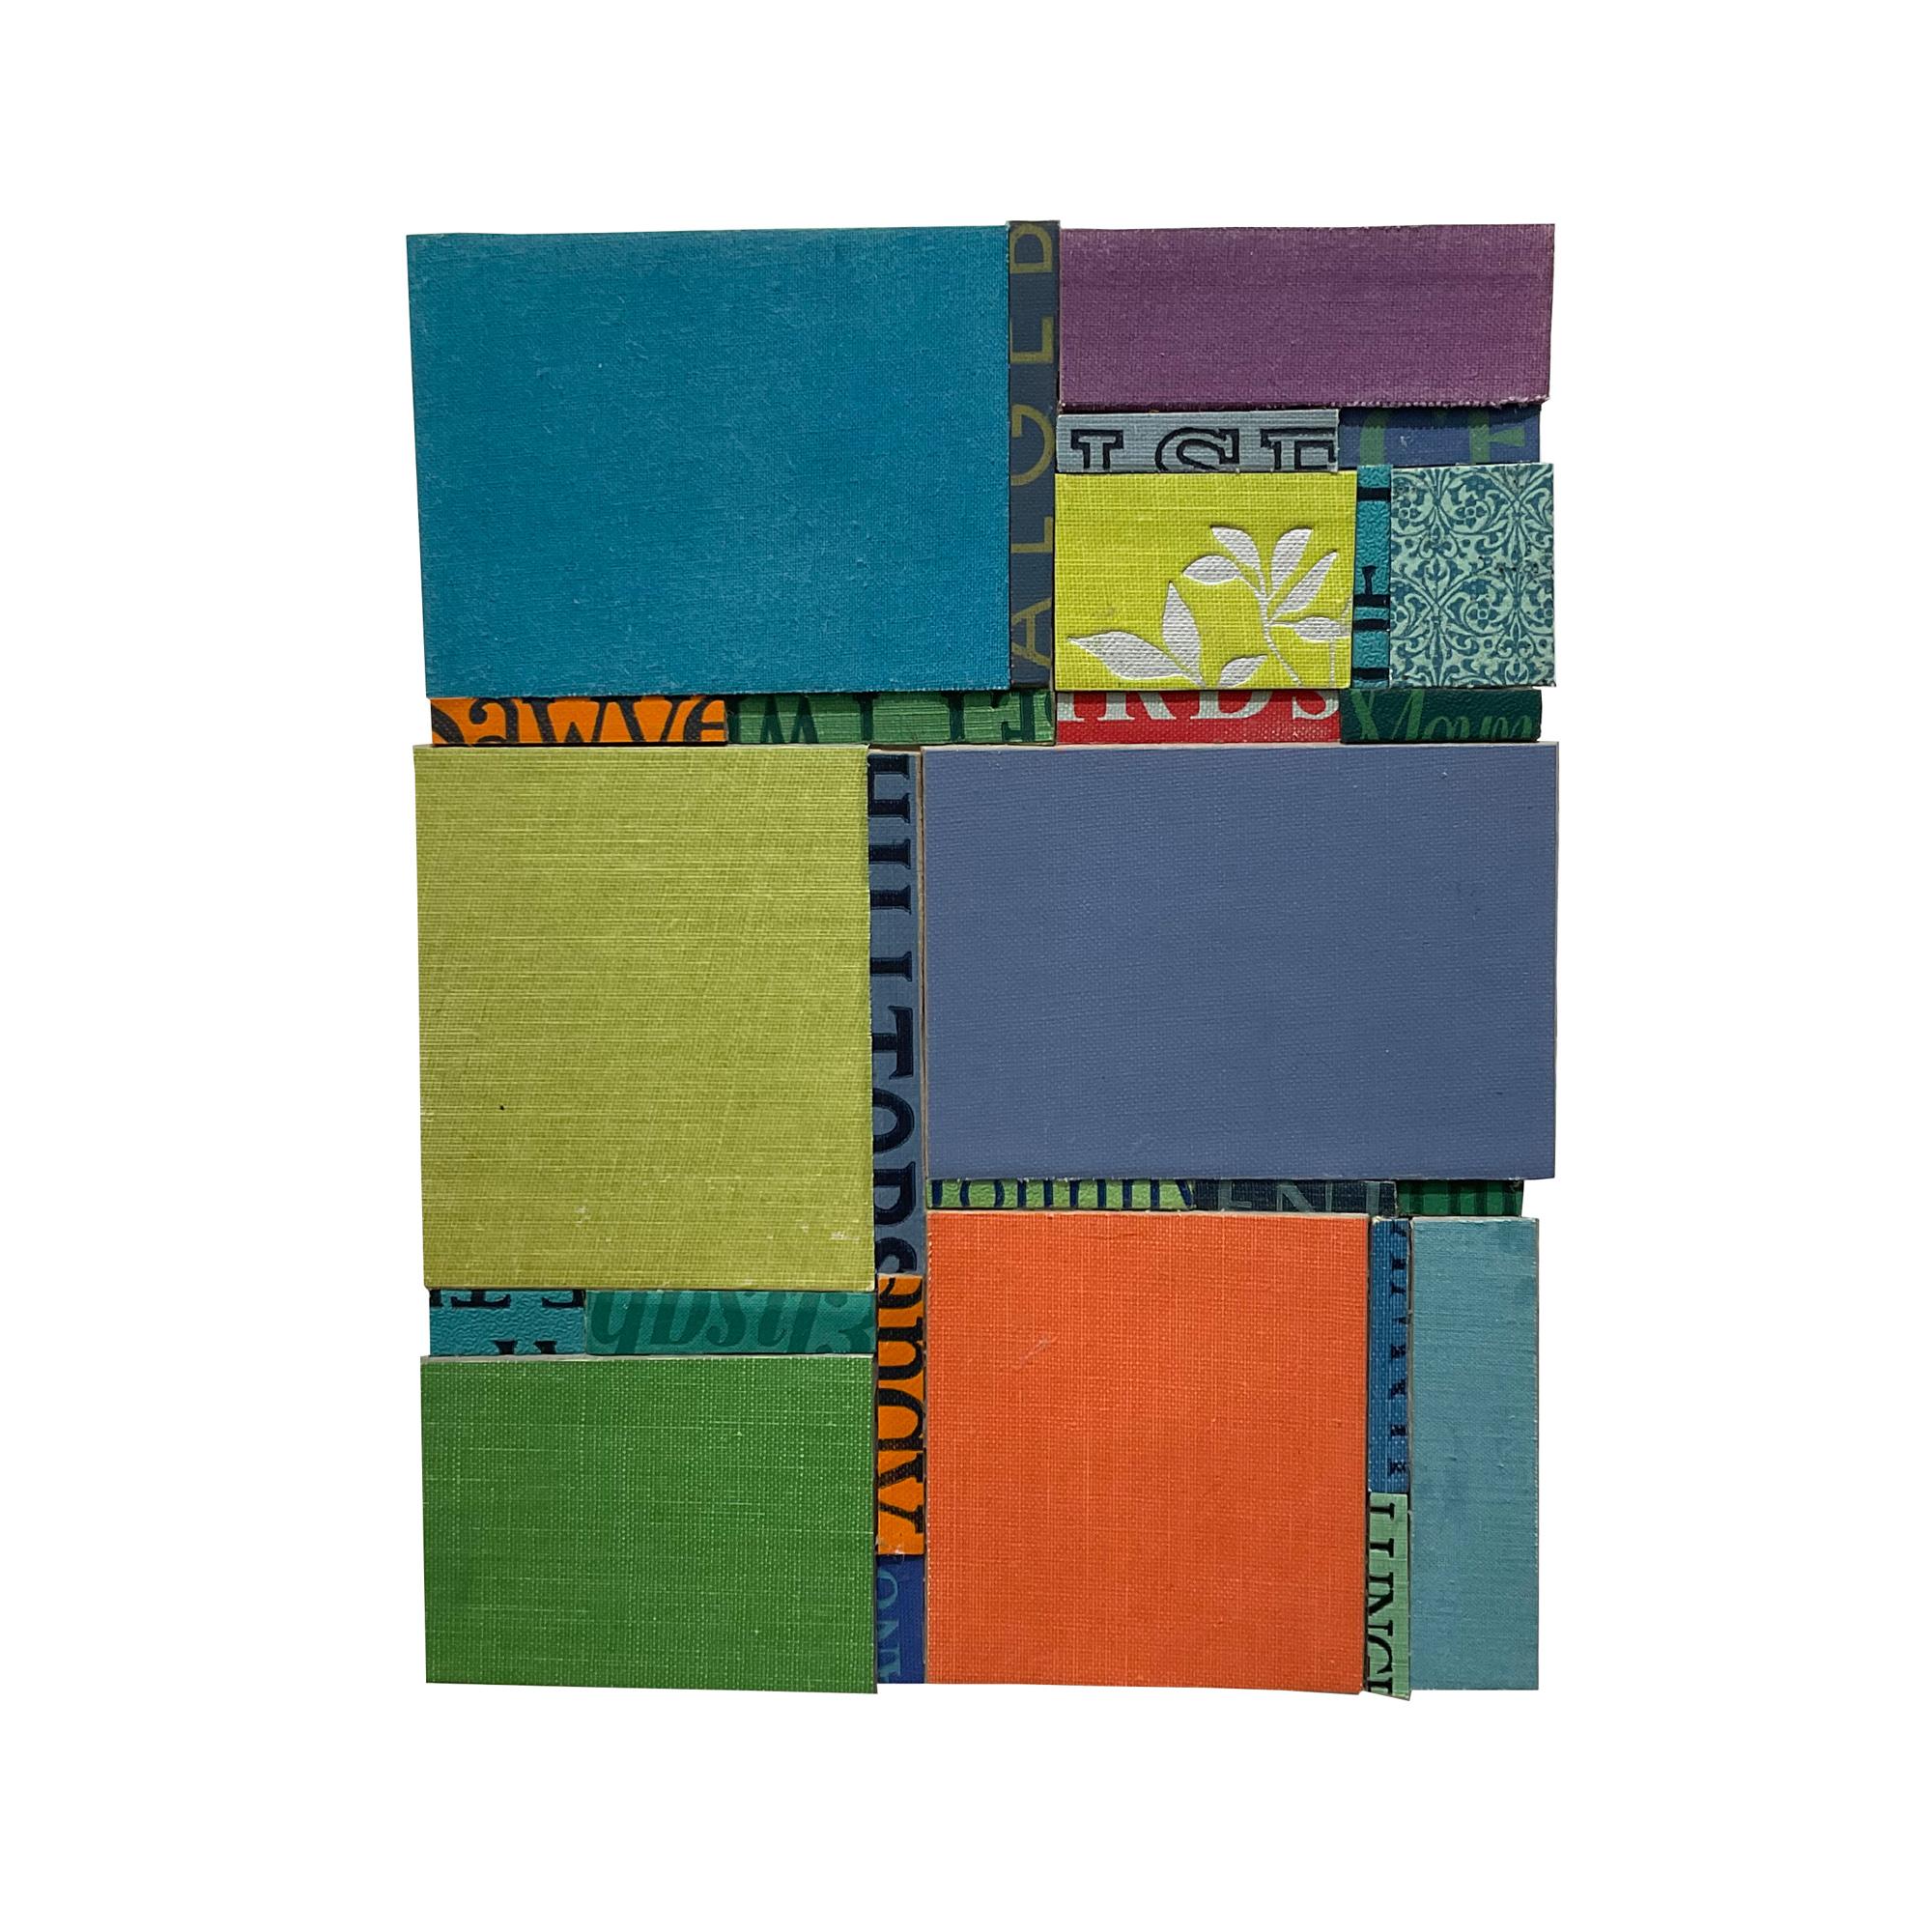 "Colorblocks" est un collage abstrait contemporain et coloré de livres à couverture rigide sur panneau de bois, réalisé par l'artiste Kerith Lisi, basée à San Carlos, en Californie. Cette pièce vibrante présente un ensemble de couvertures de livres